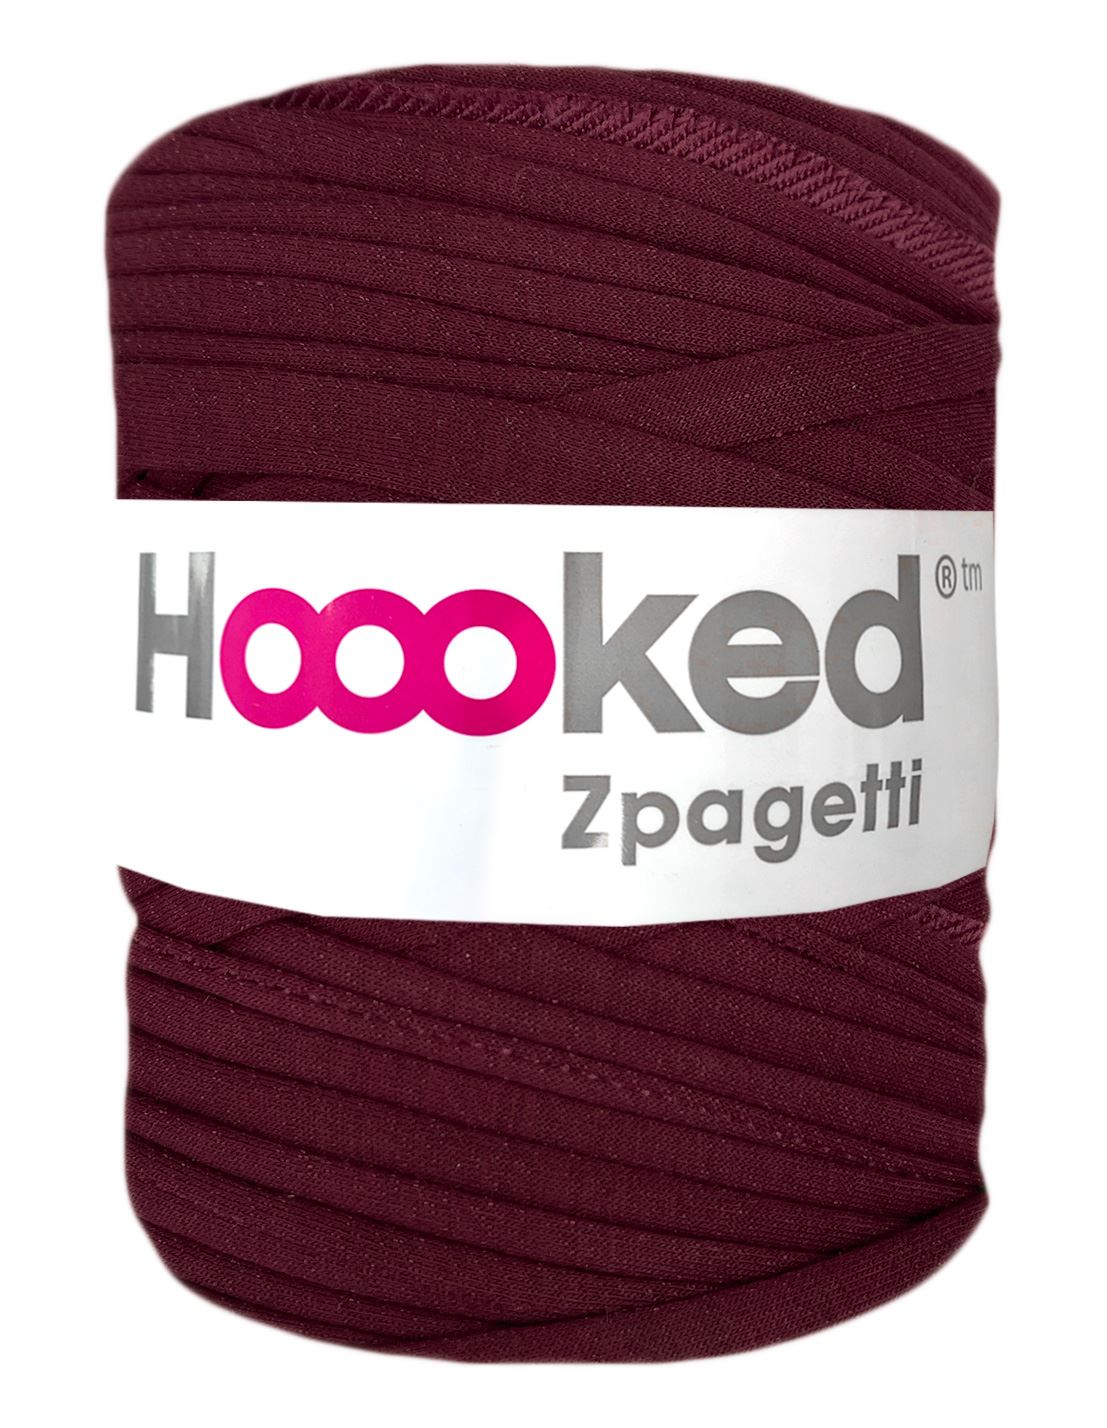 Light garnet t-shirt yarn by Hoooked Zpagetti (100-120m)